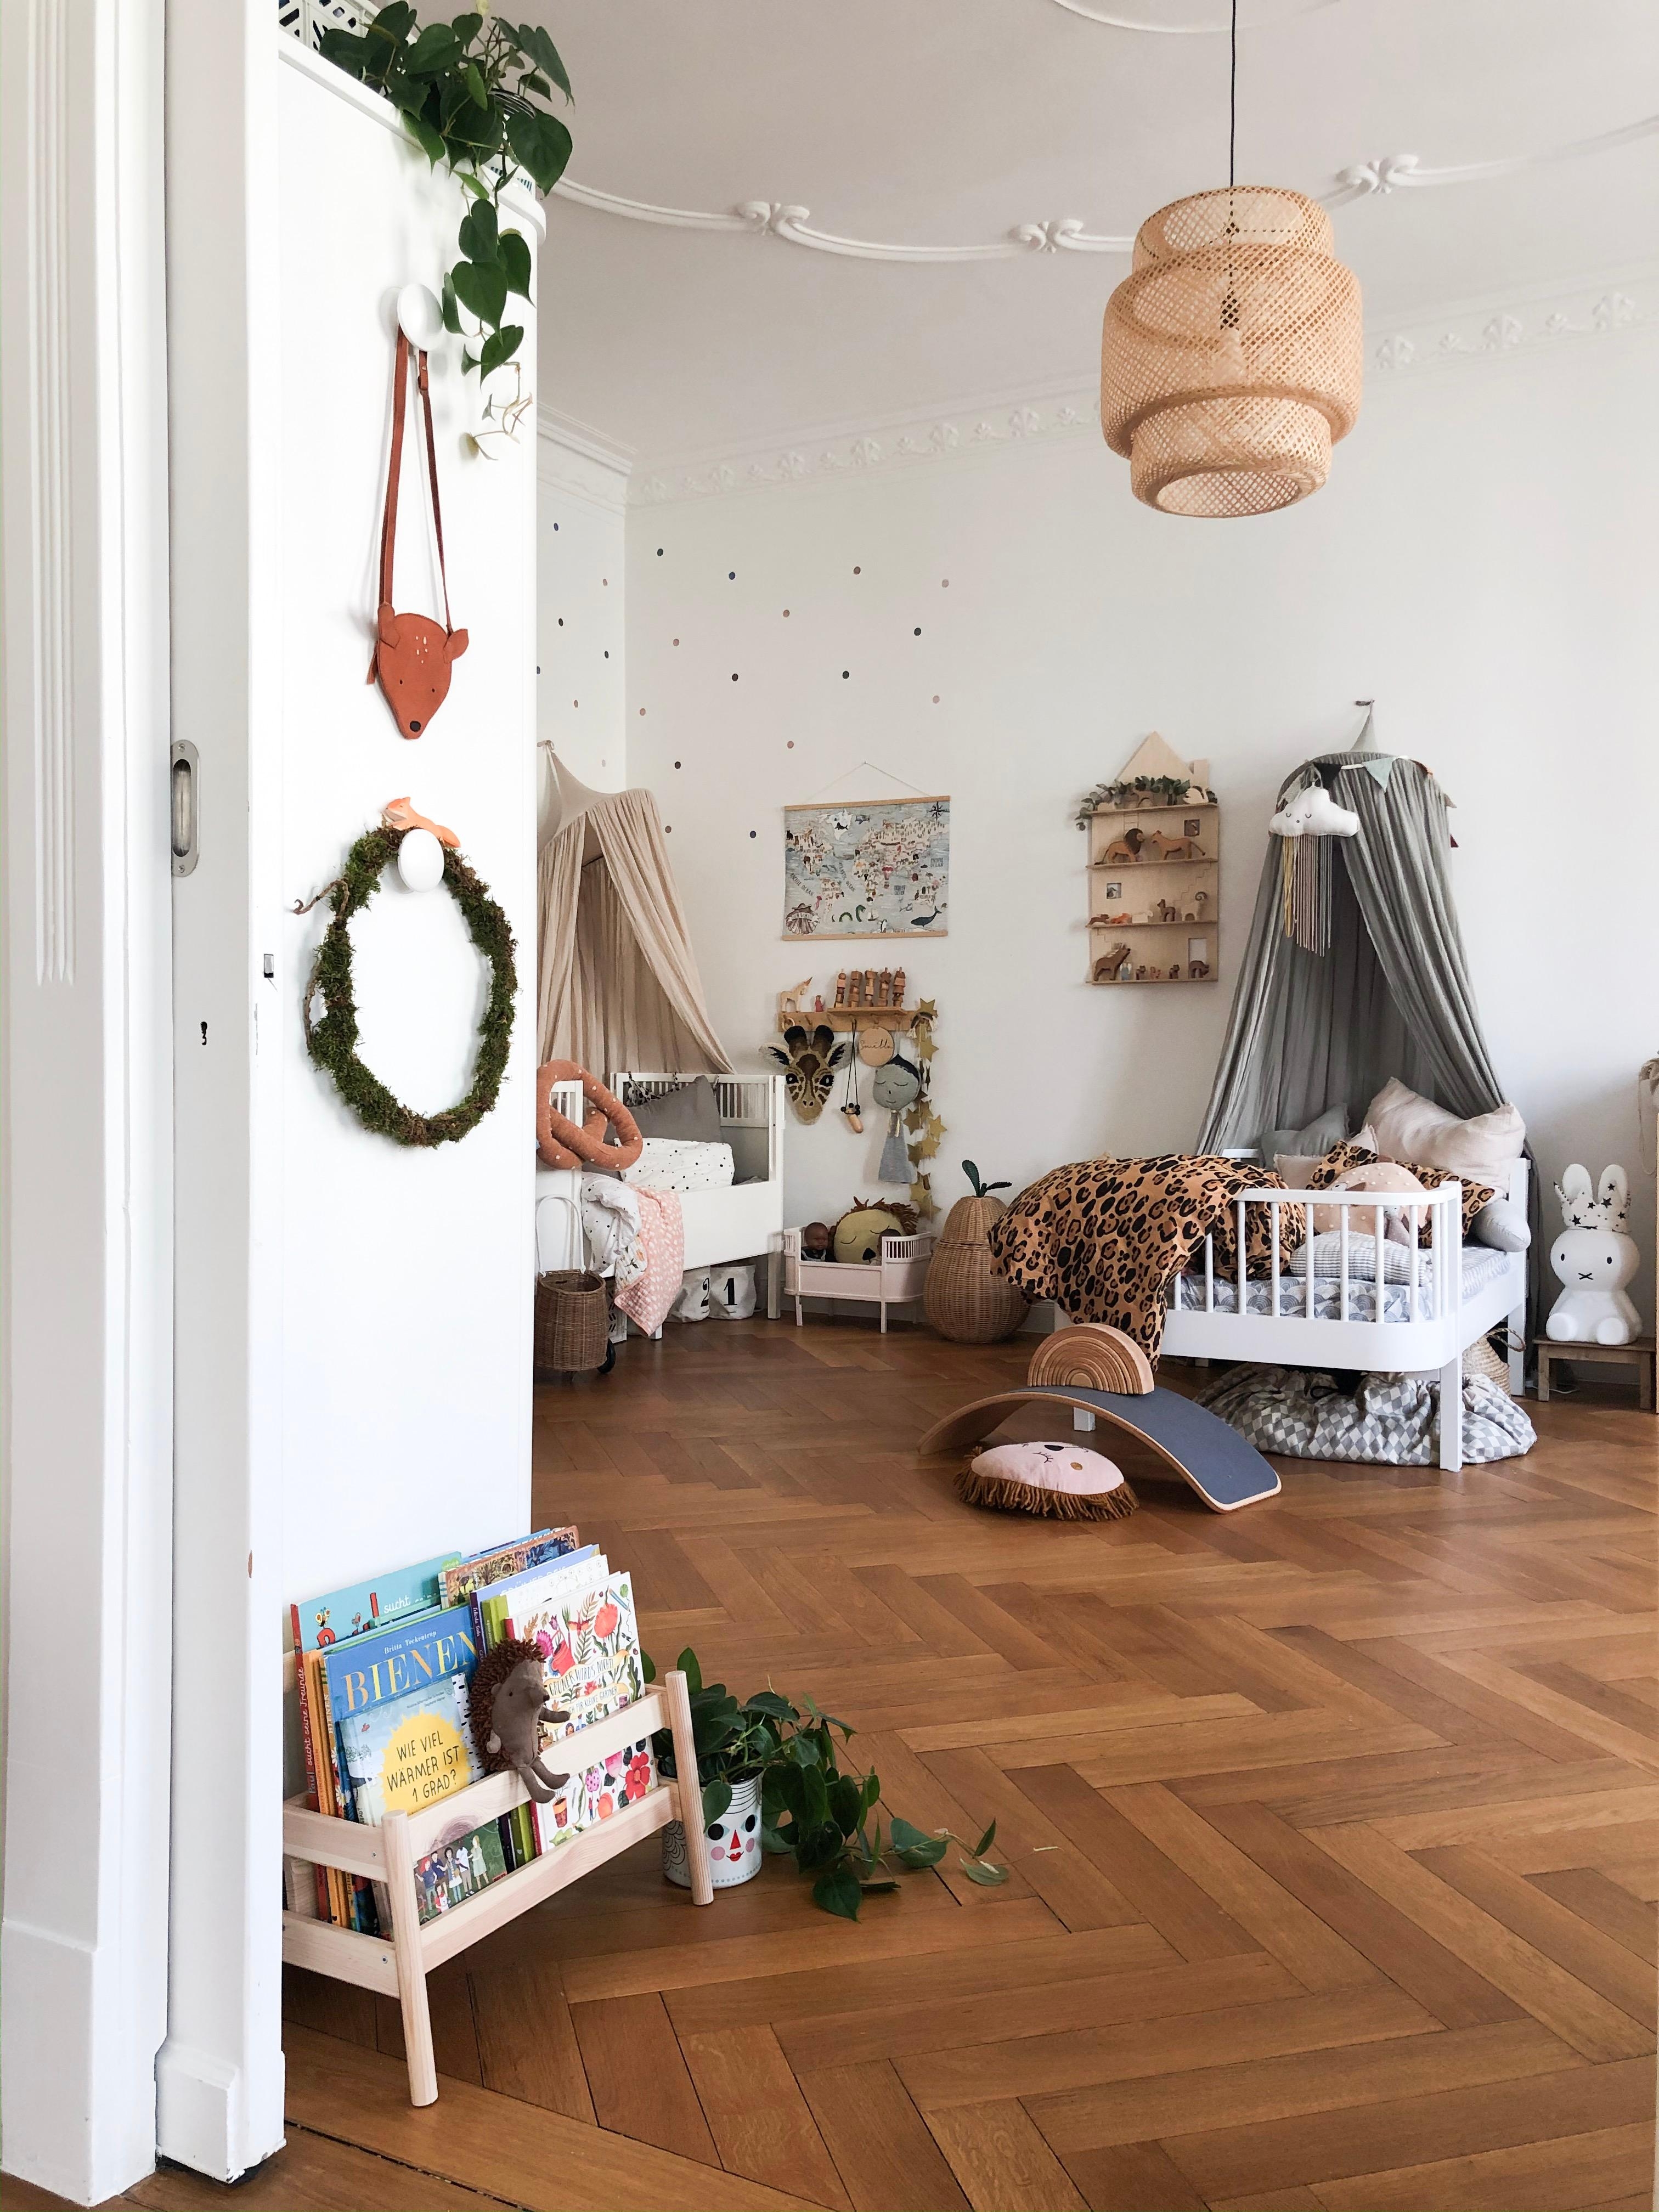 Ein kleiner Einblick ins Kinderzimmer #altbau #altbauliebe #kinderzimmer #plants